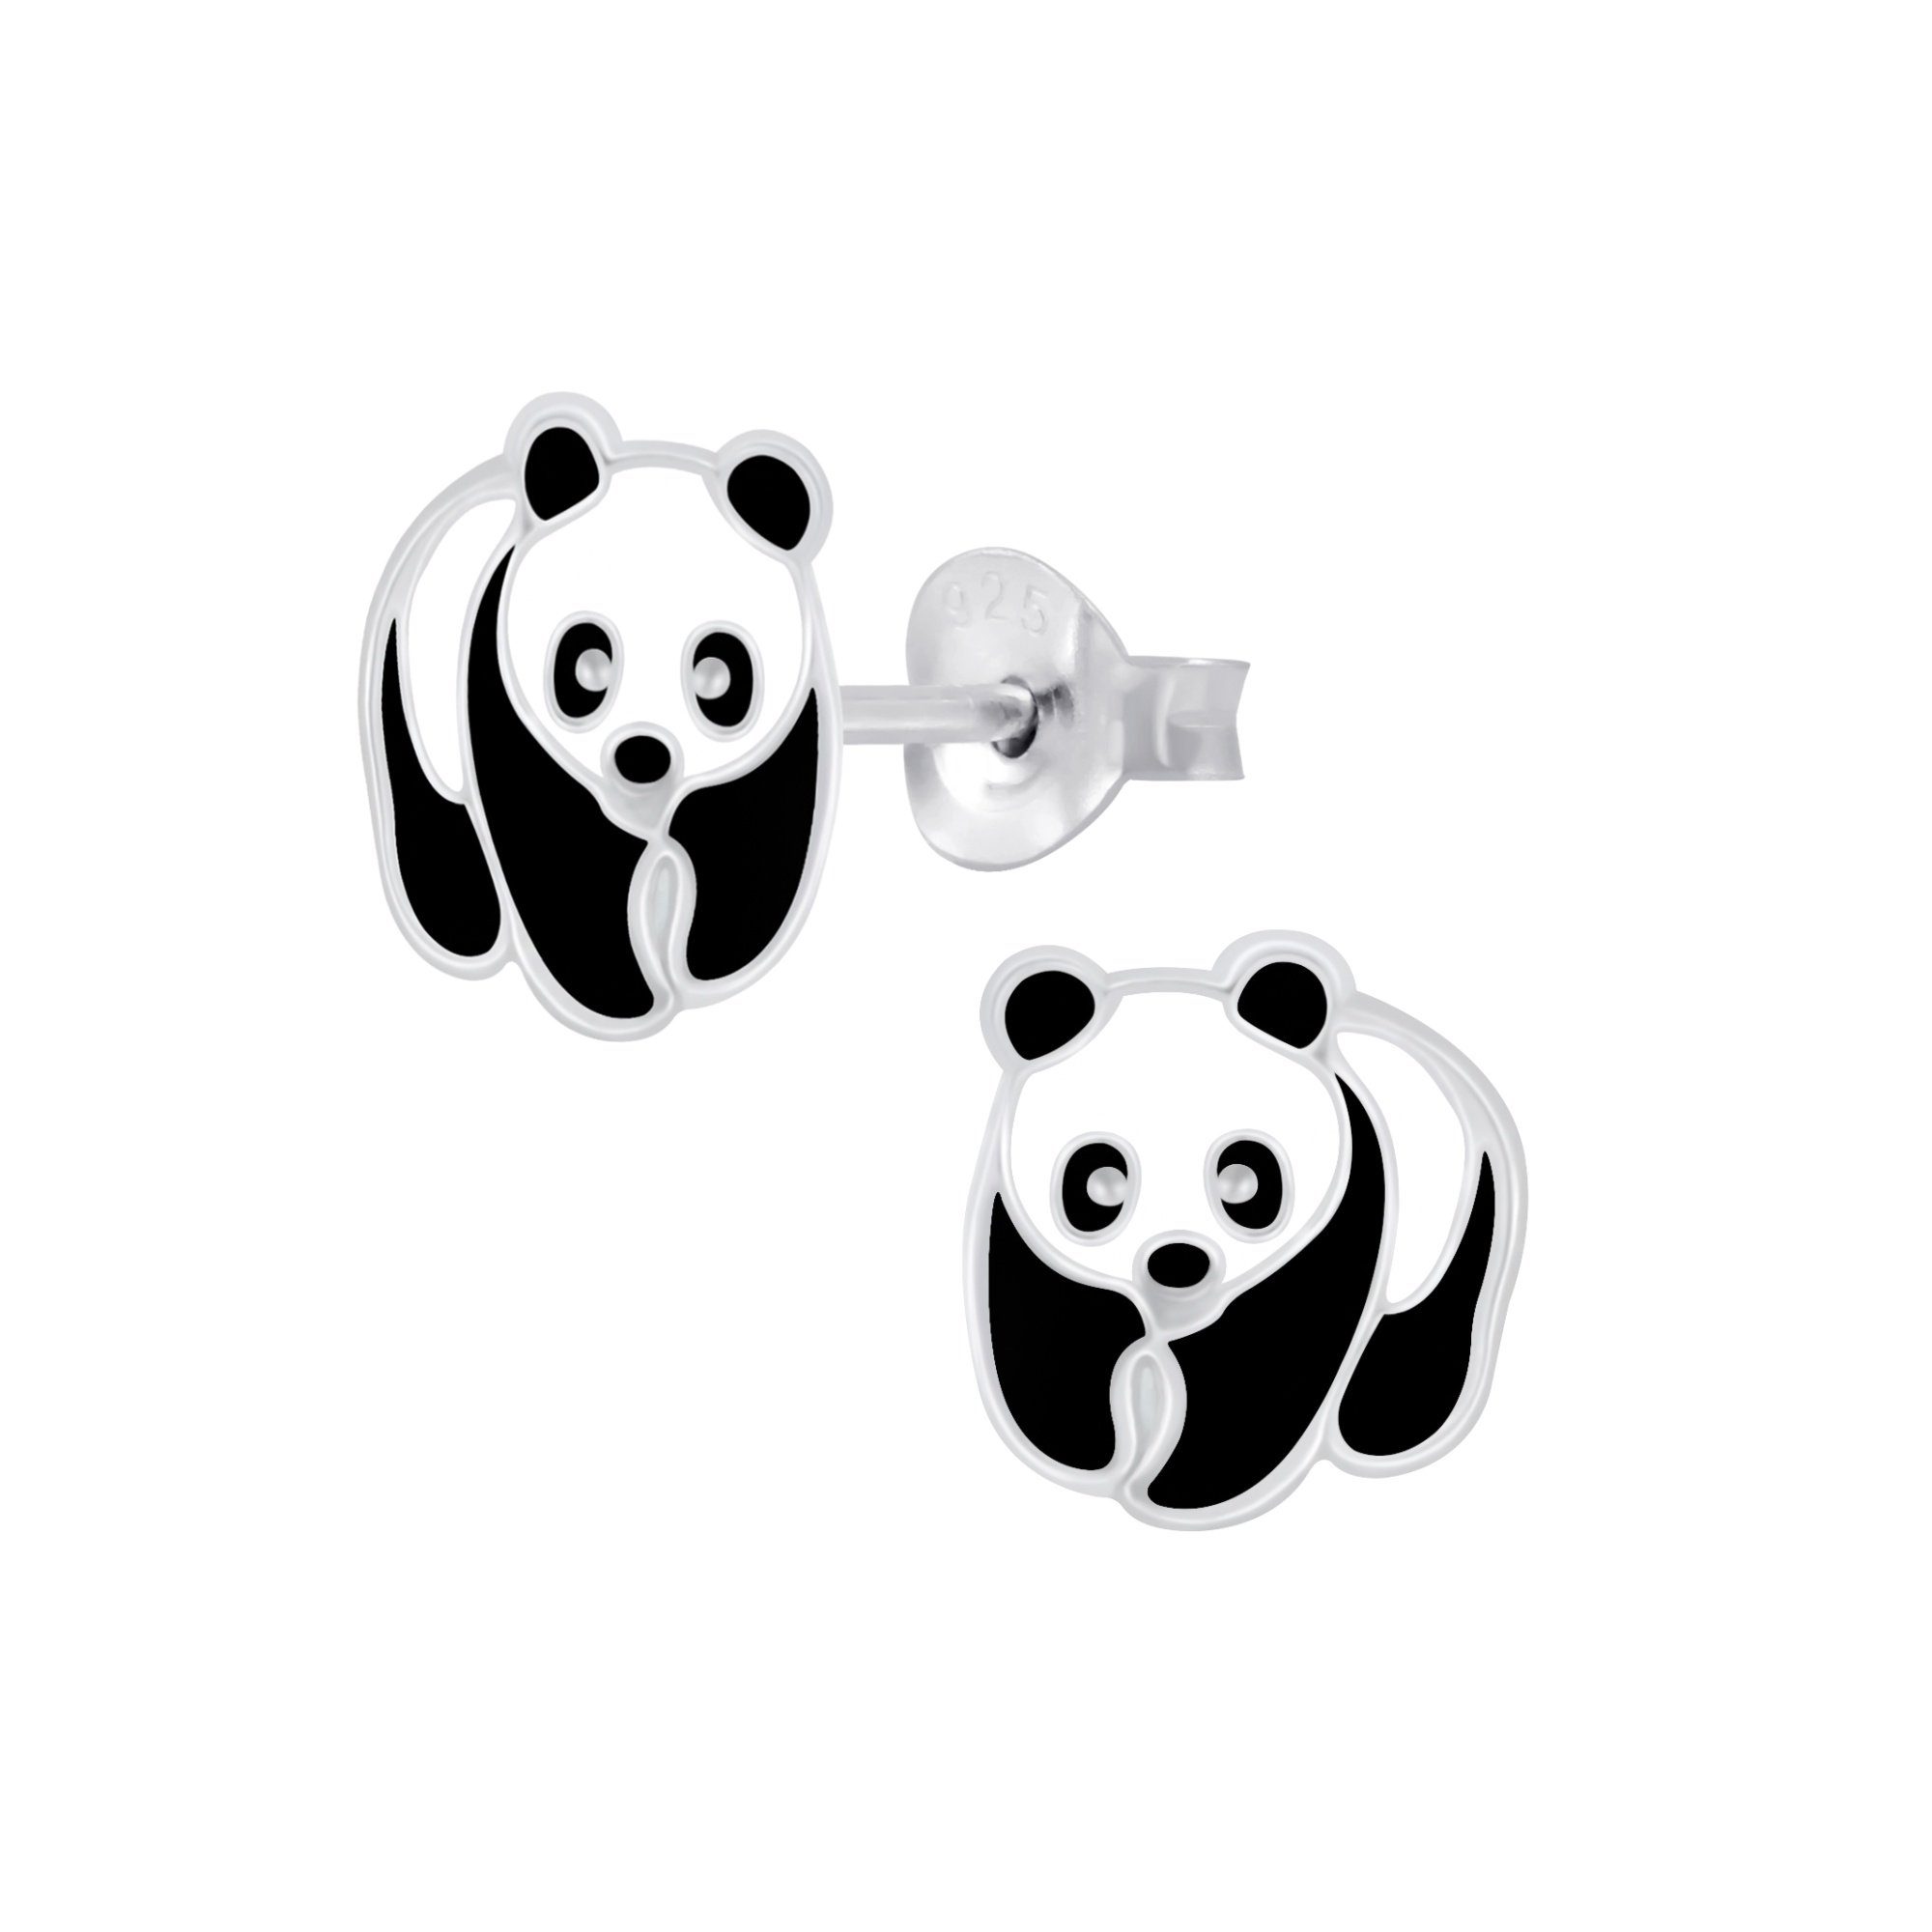 schmuck23 Paar Ohrstecker Kinder Ohrringe Panda Bär 925 Silber, Kinderschmuck Mädchen Geschenk echte Silberohrringe | Ohrstecker